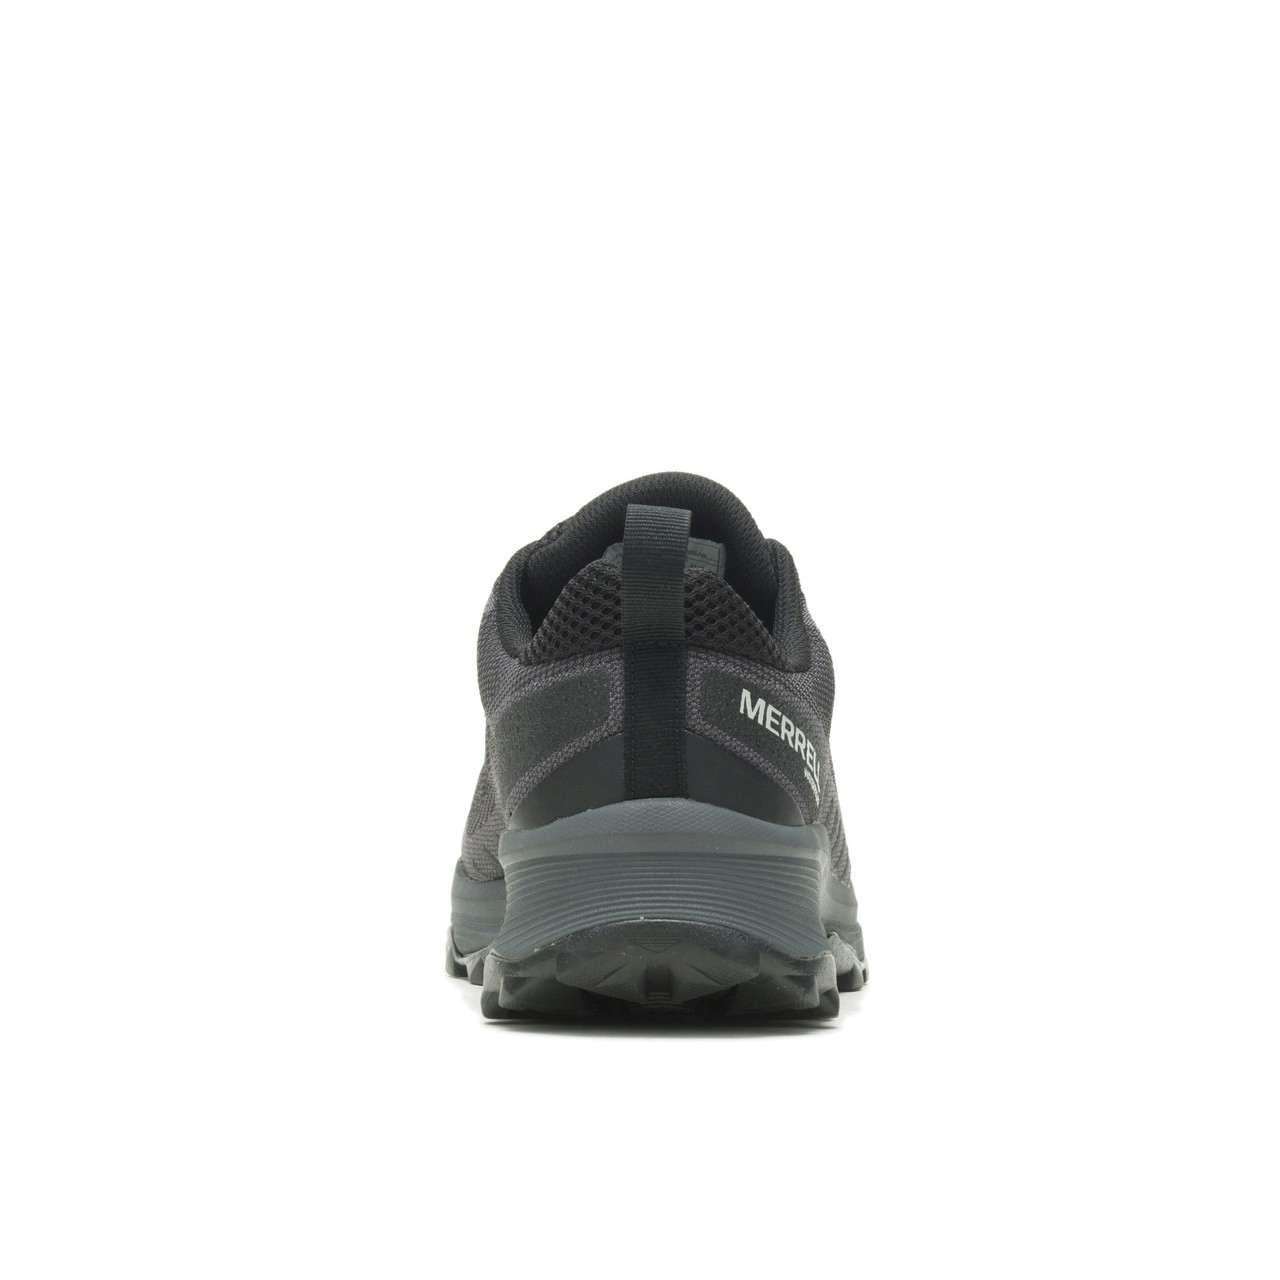 Chaussures de courte rando. imperméables Speed Eco Noir/Asphalte